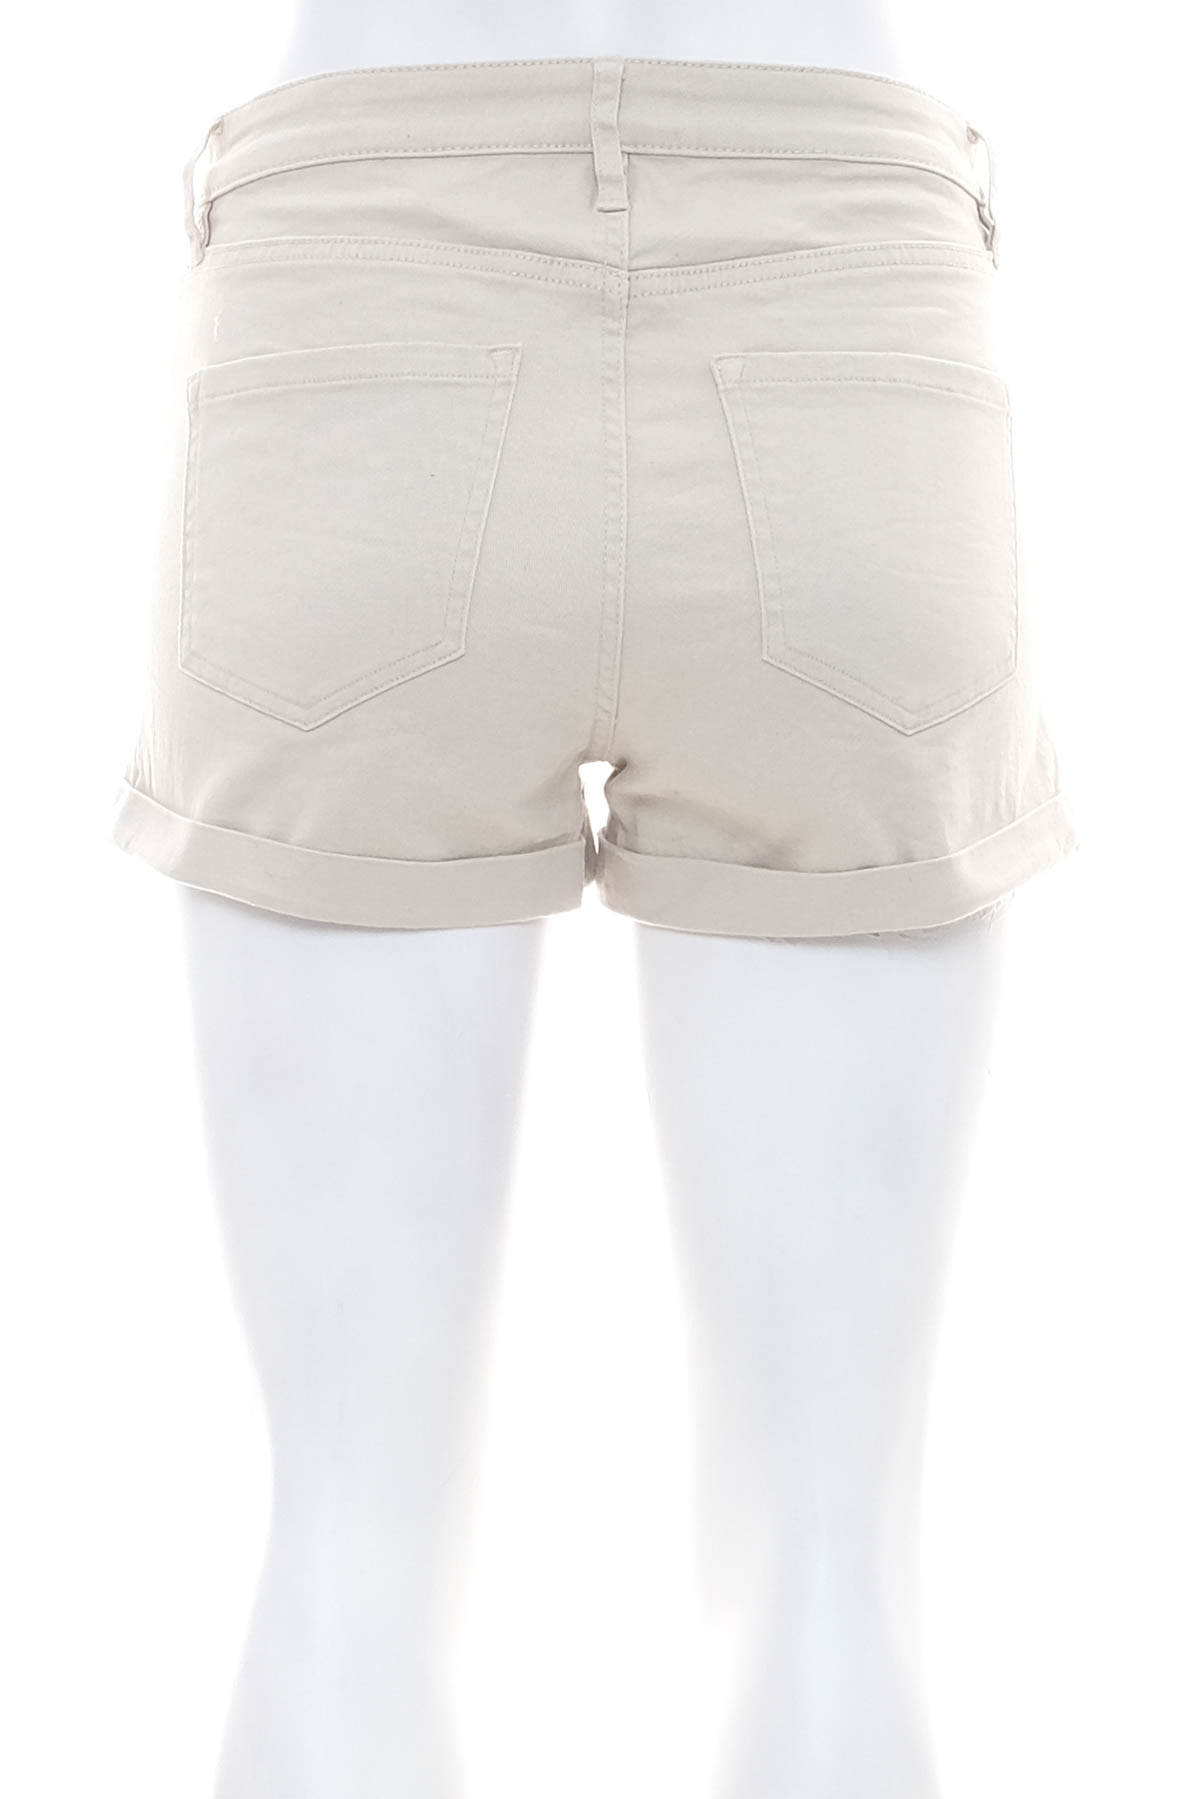 Γυναικείο κοντό παντελόνι - H&M - 1